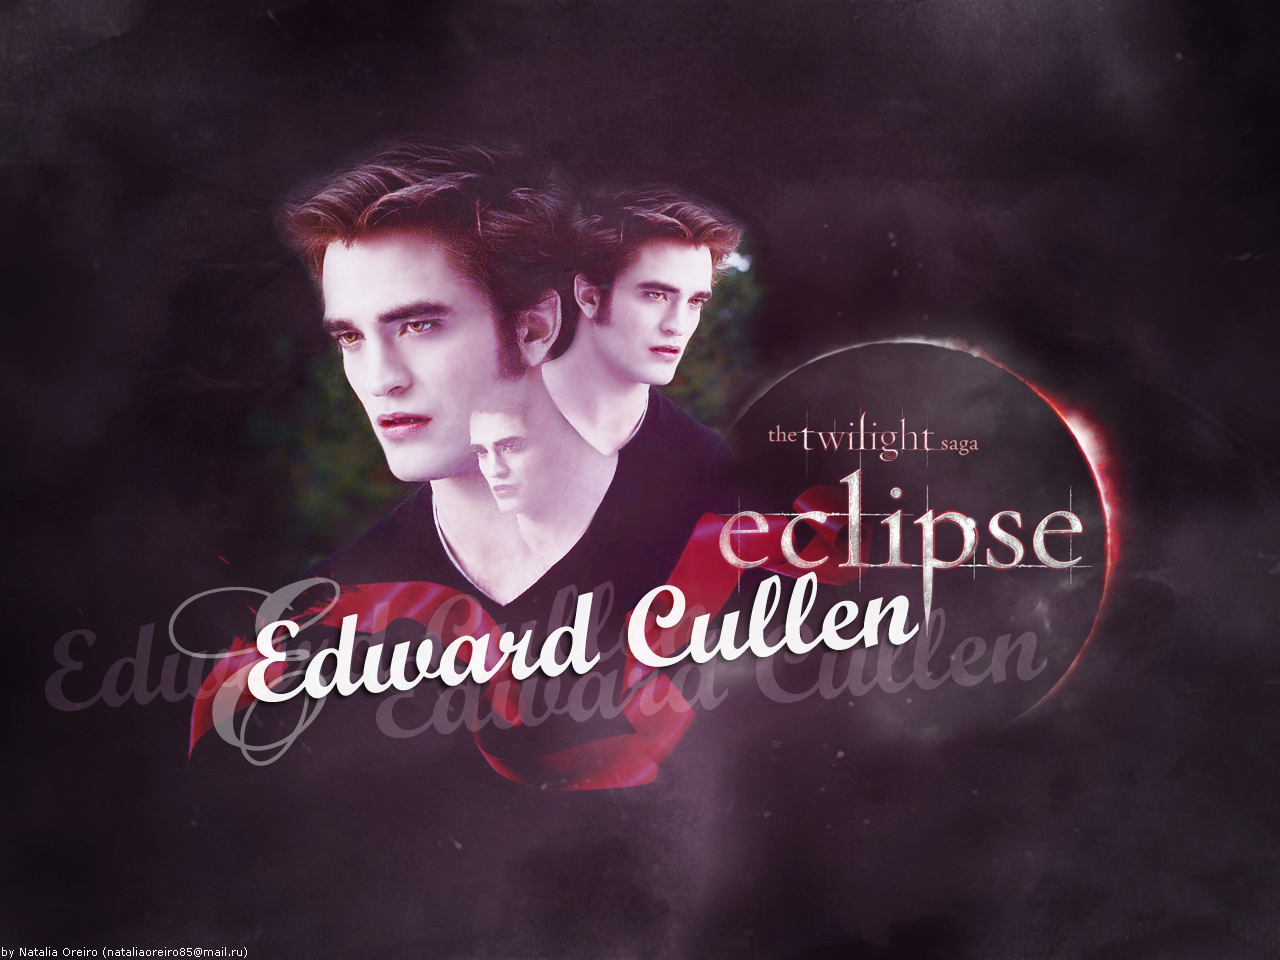 Edward - Edward Cullen Wallpaper (10908566) - Fanpop